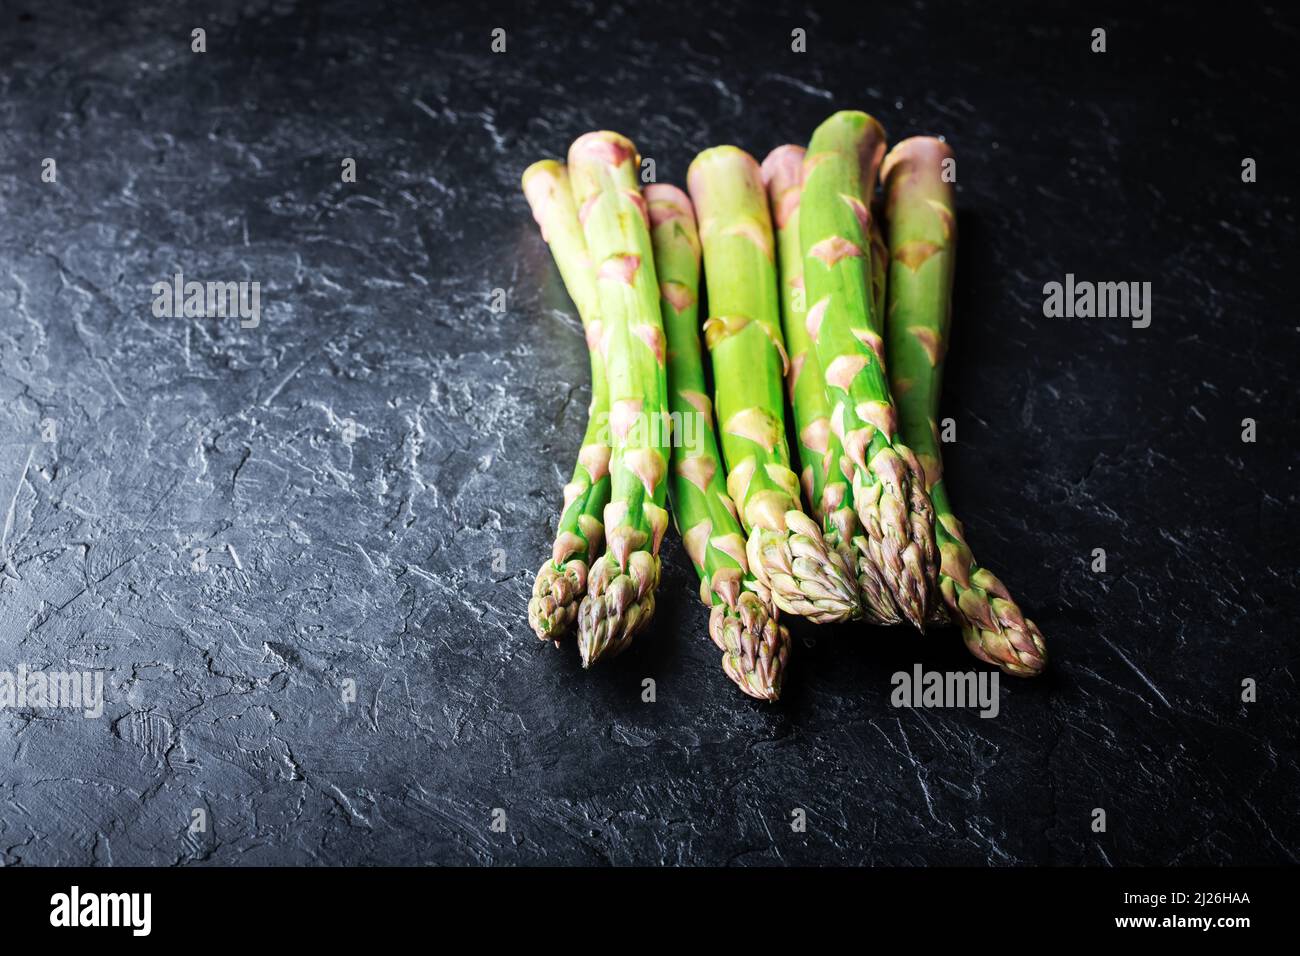 Germogli di asparagi verdi su tavola nera vista dall'alto piatto. Fotografia alimentare Foto Stock